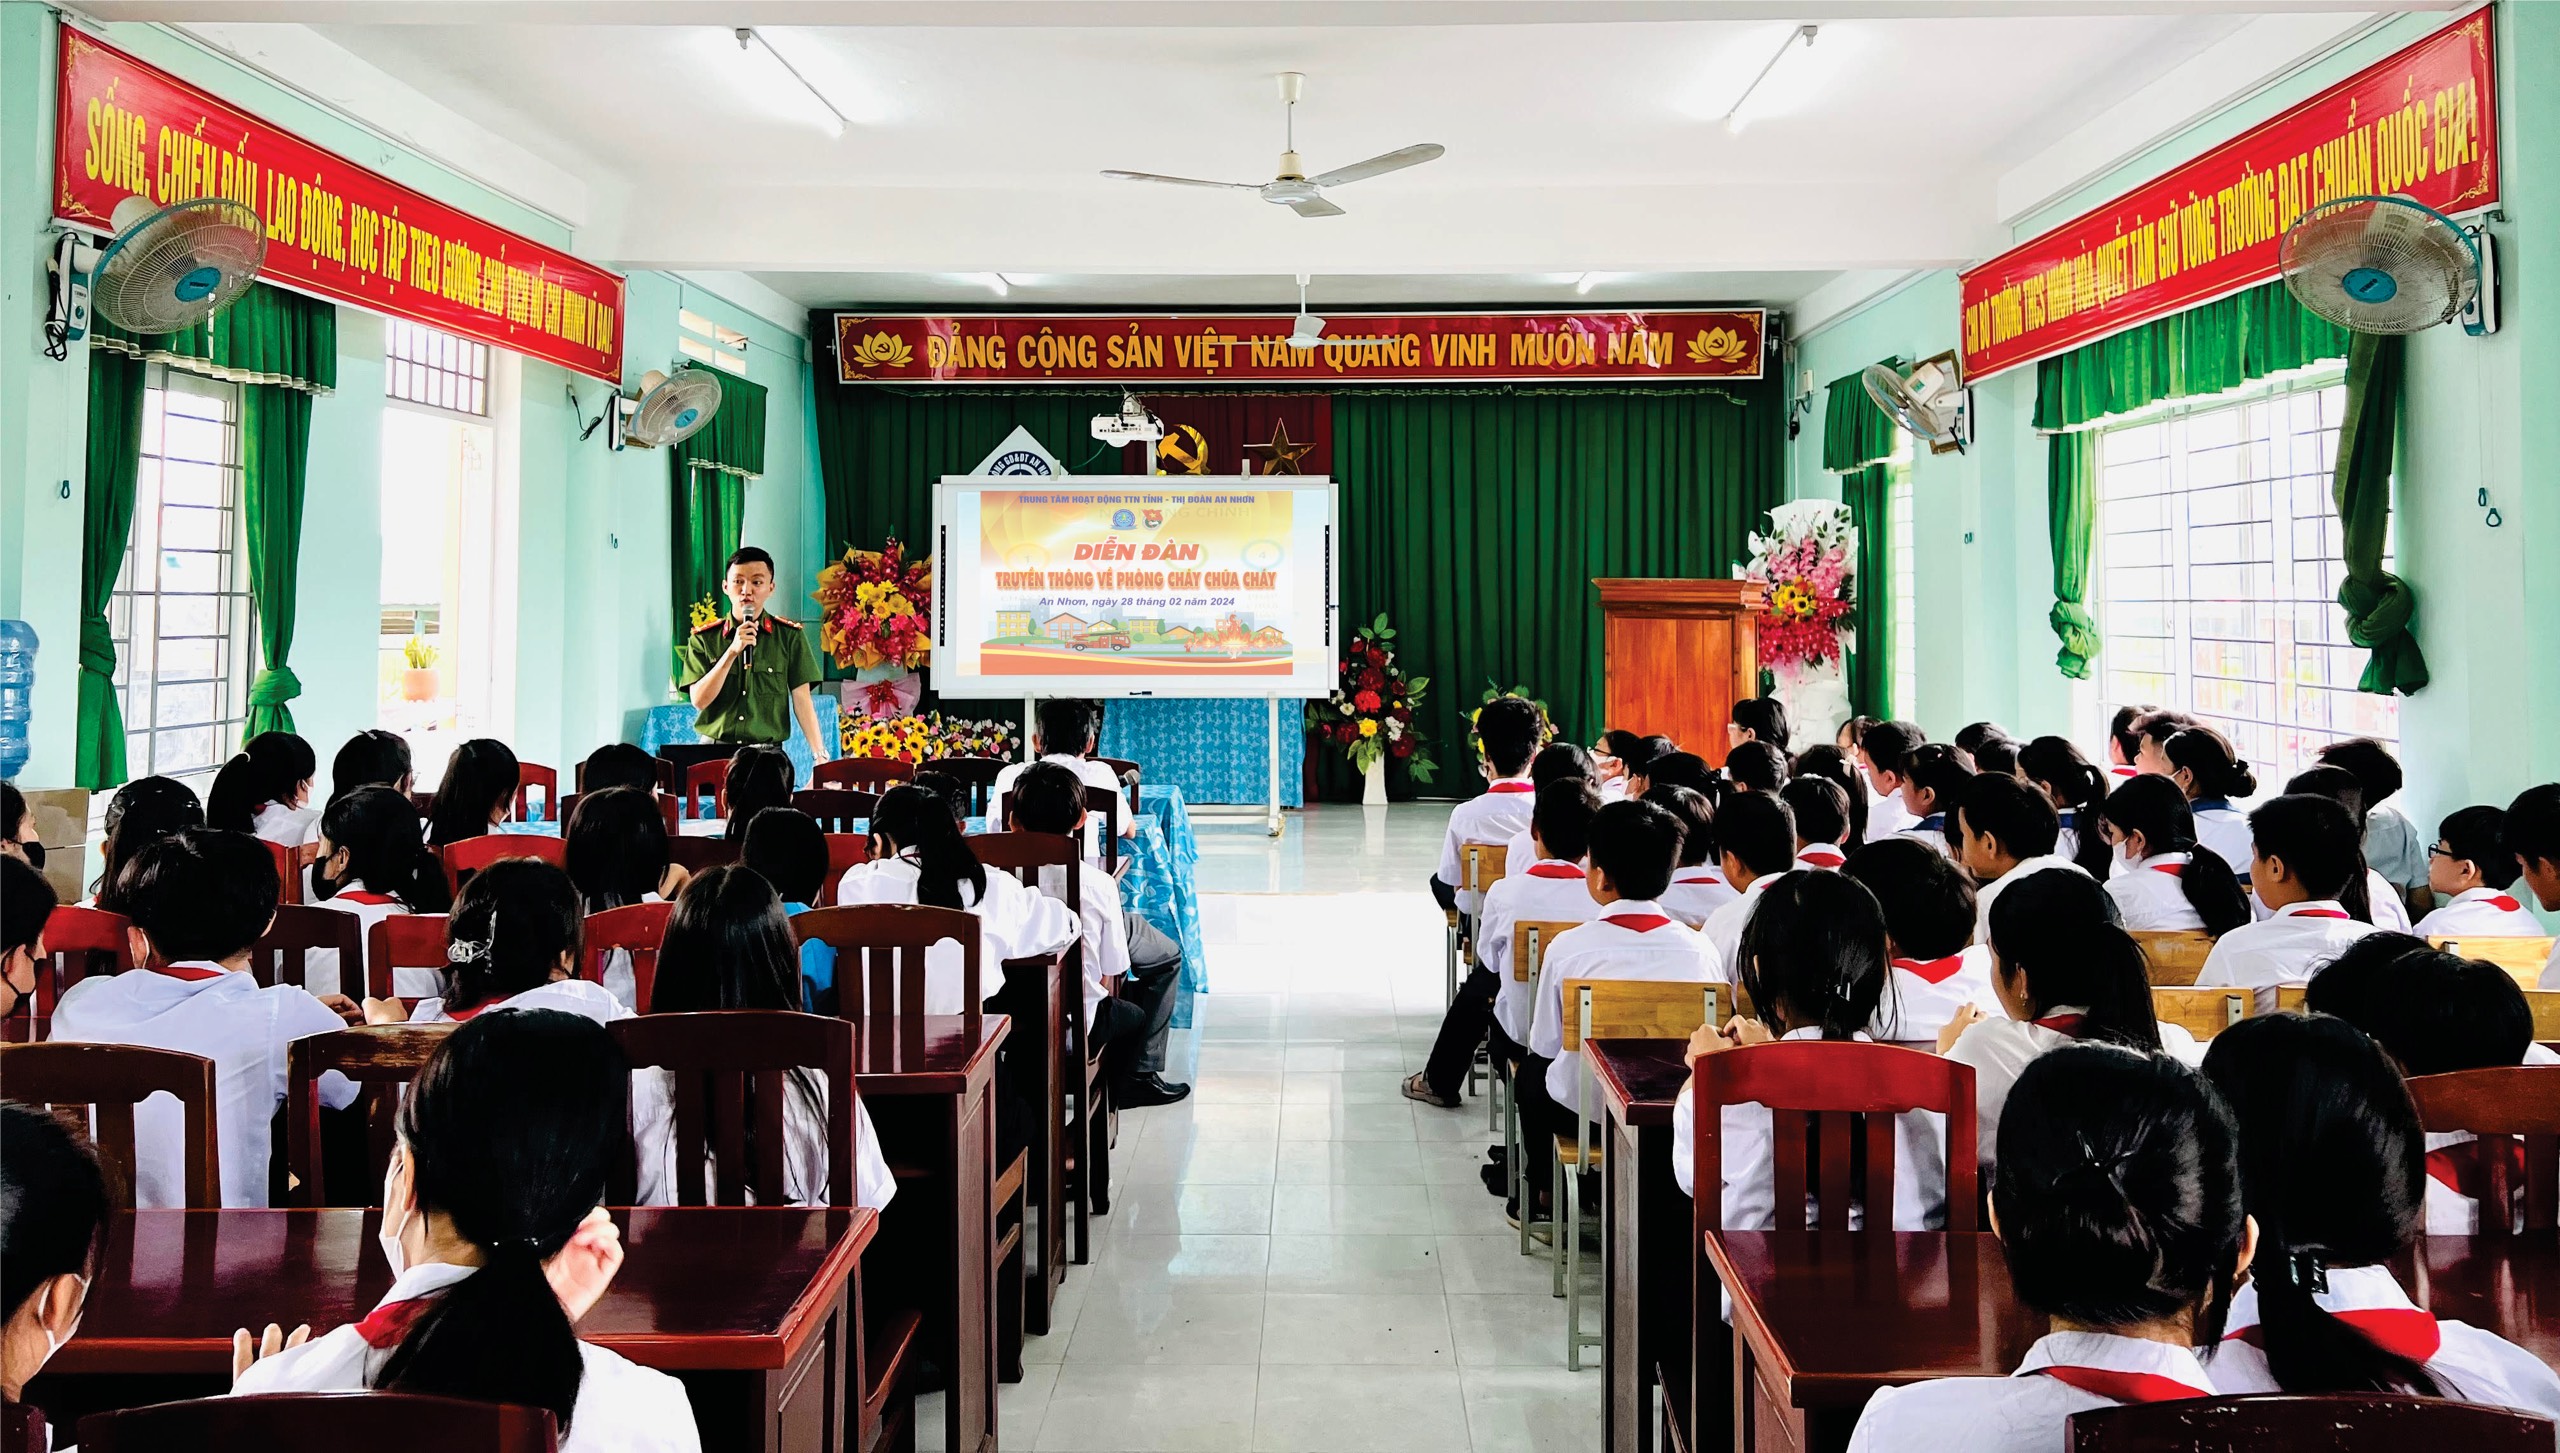 Tổ chức Diễn đàn truyền thông “Phòng cháy chữa cháy” cho 300 em học sinh Trường THCS Nhơn Hòa và THCS Nhơn Thọ, thị xã An Nhơn.